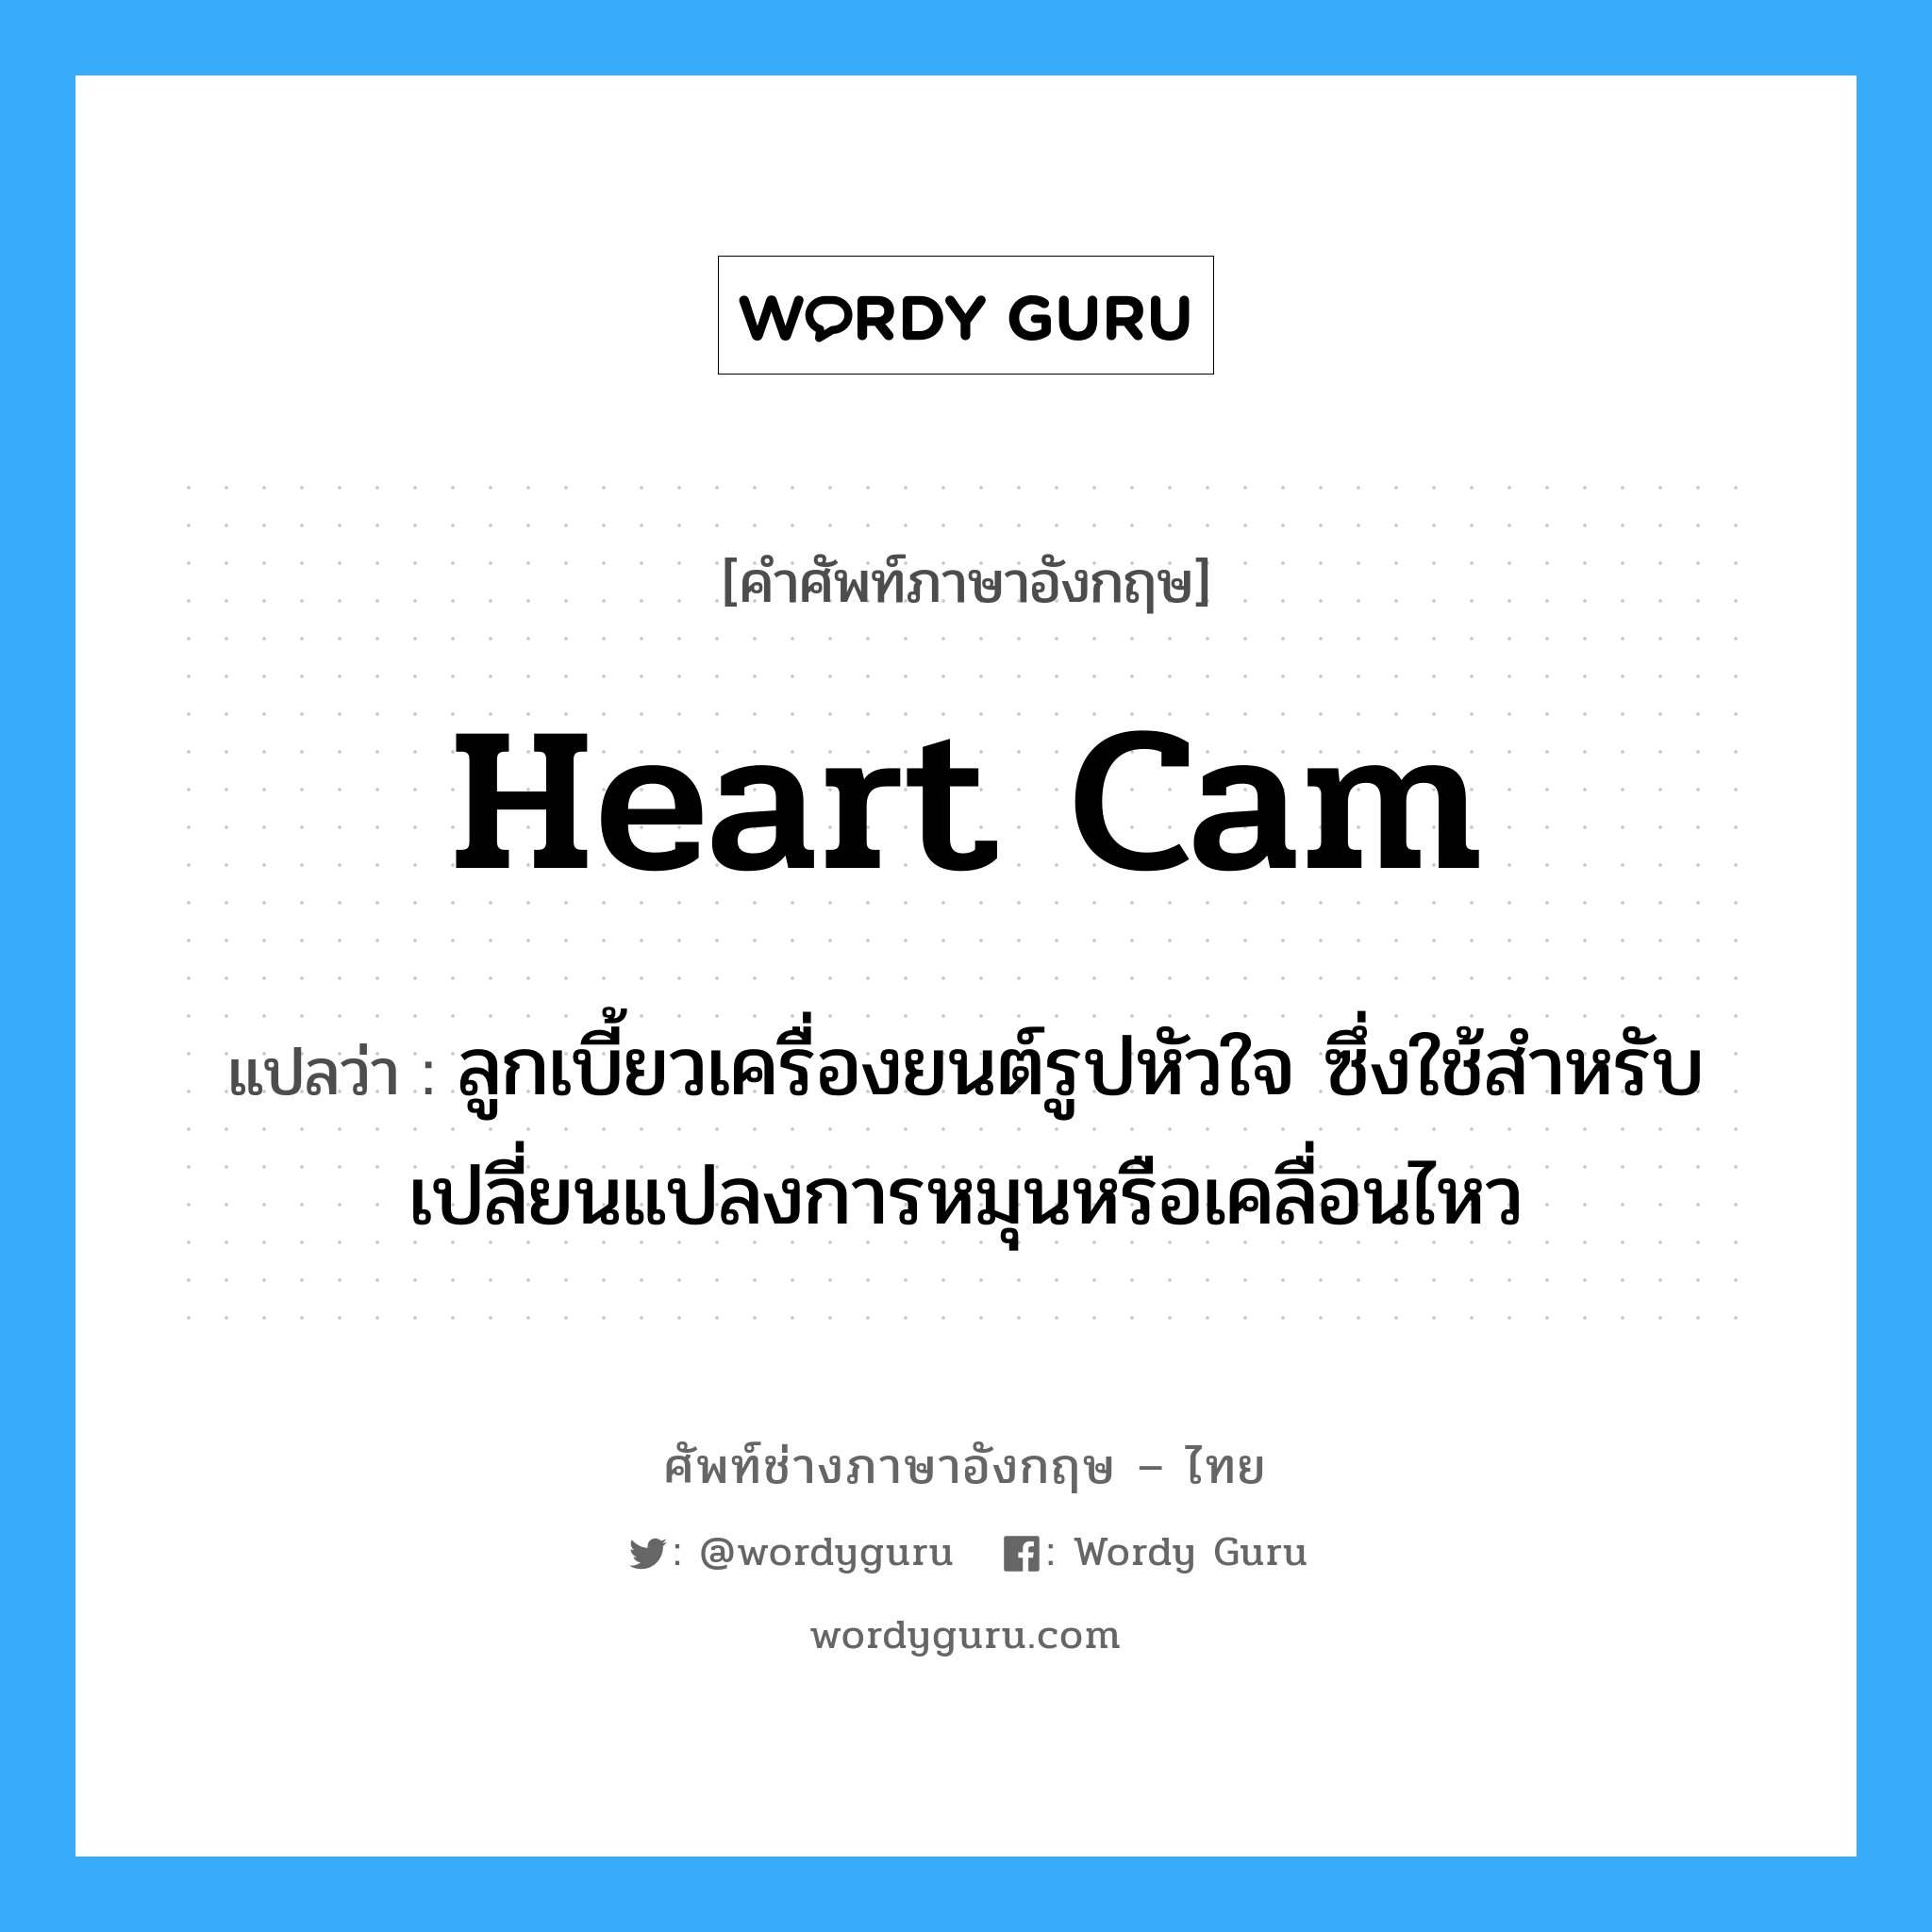 heart cam แปลว่า?, คำศัพท์ช่างภาษาอังกฤษ - ไทย heart cam คำศัพท์ภาษาอังกฤษ heart cam แปลว่า ลูกเบี้ยวเครื่องยนต์รูปหัวใจ ซึ่งใช้สำหรับเปลี่ยนแปลงการหมุนหรือเคลื่อนไหว